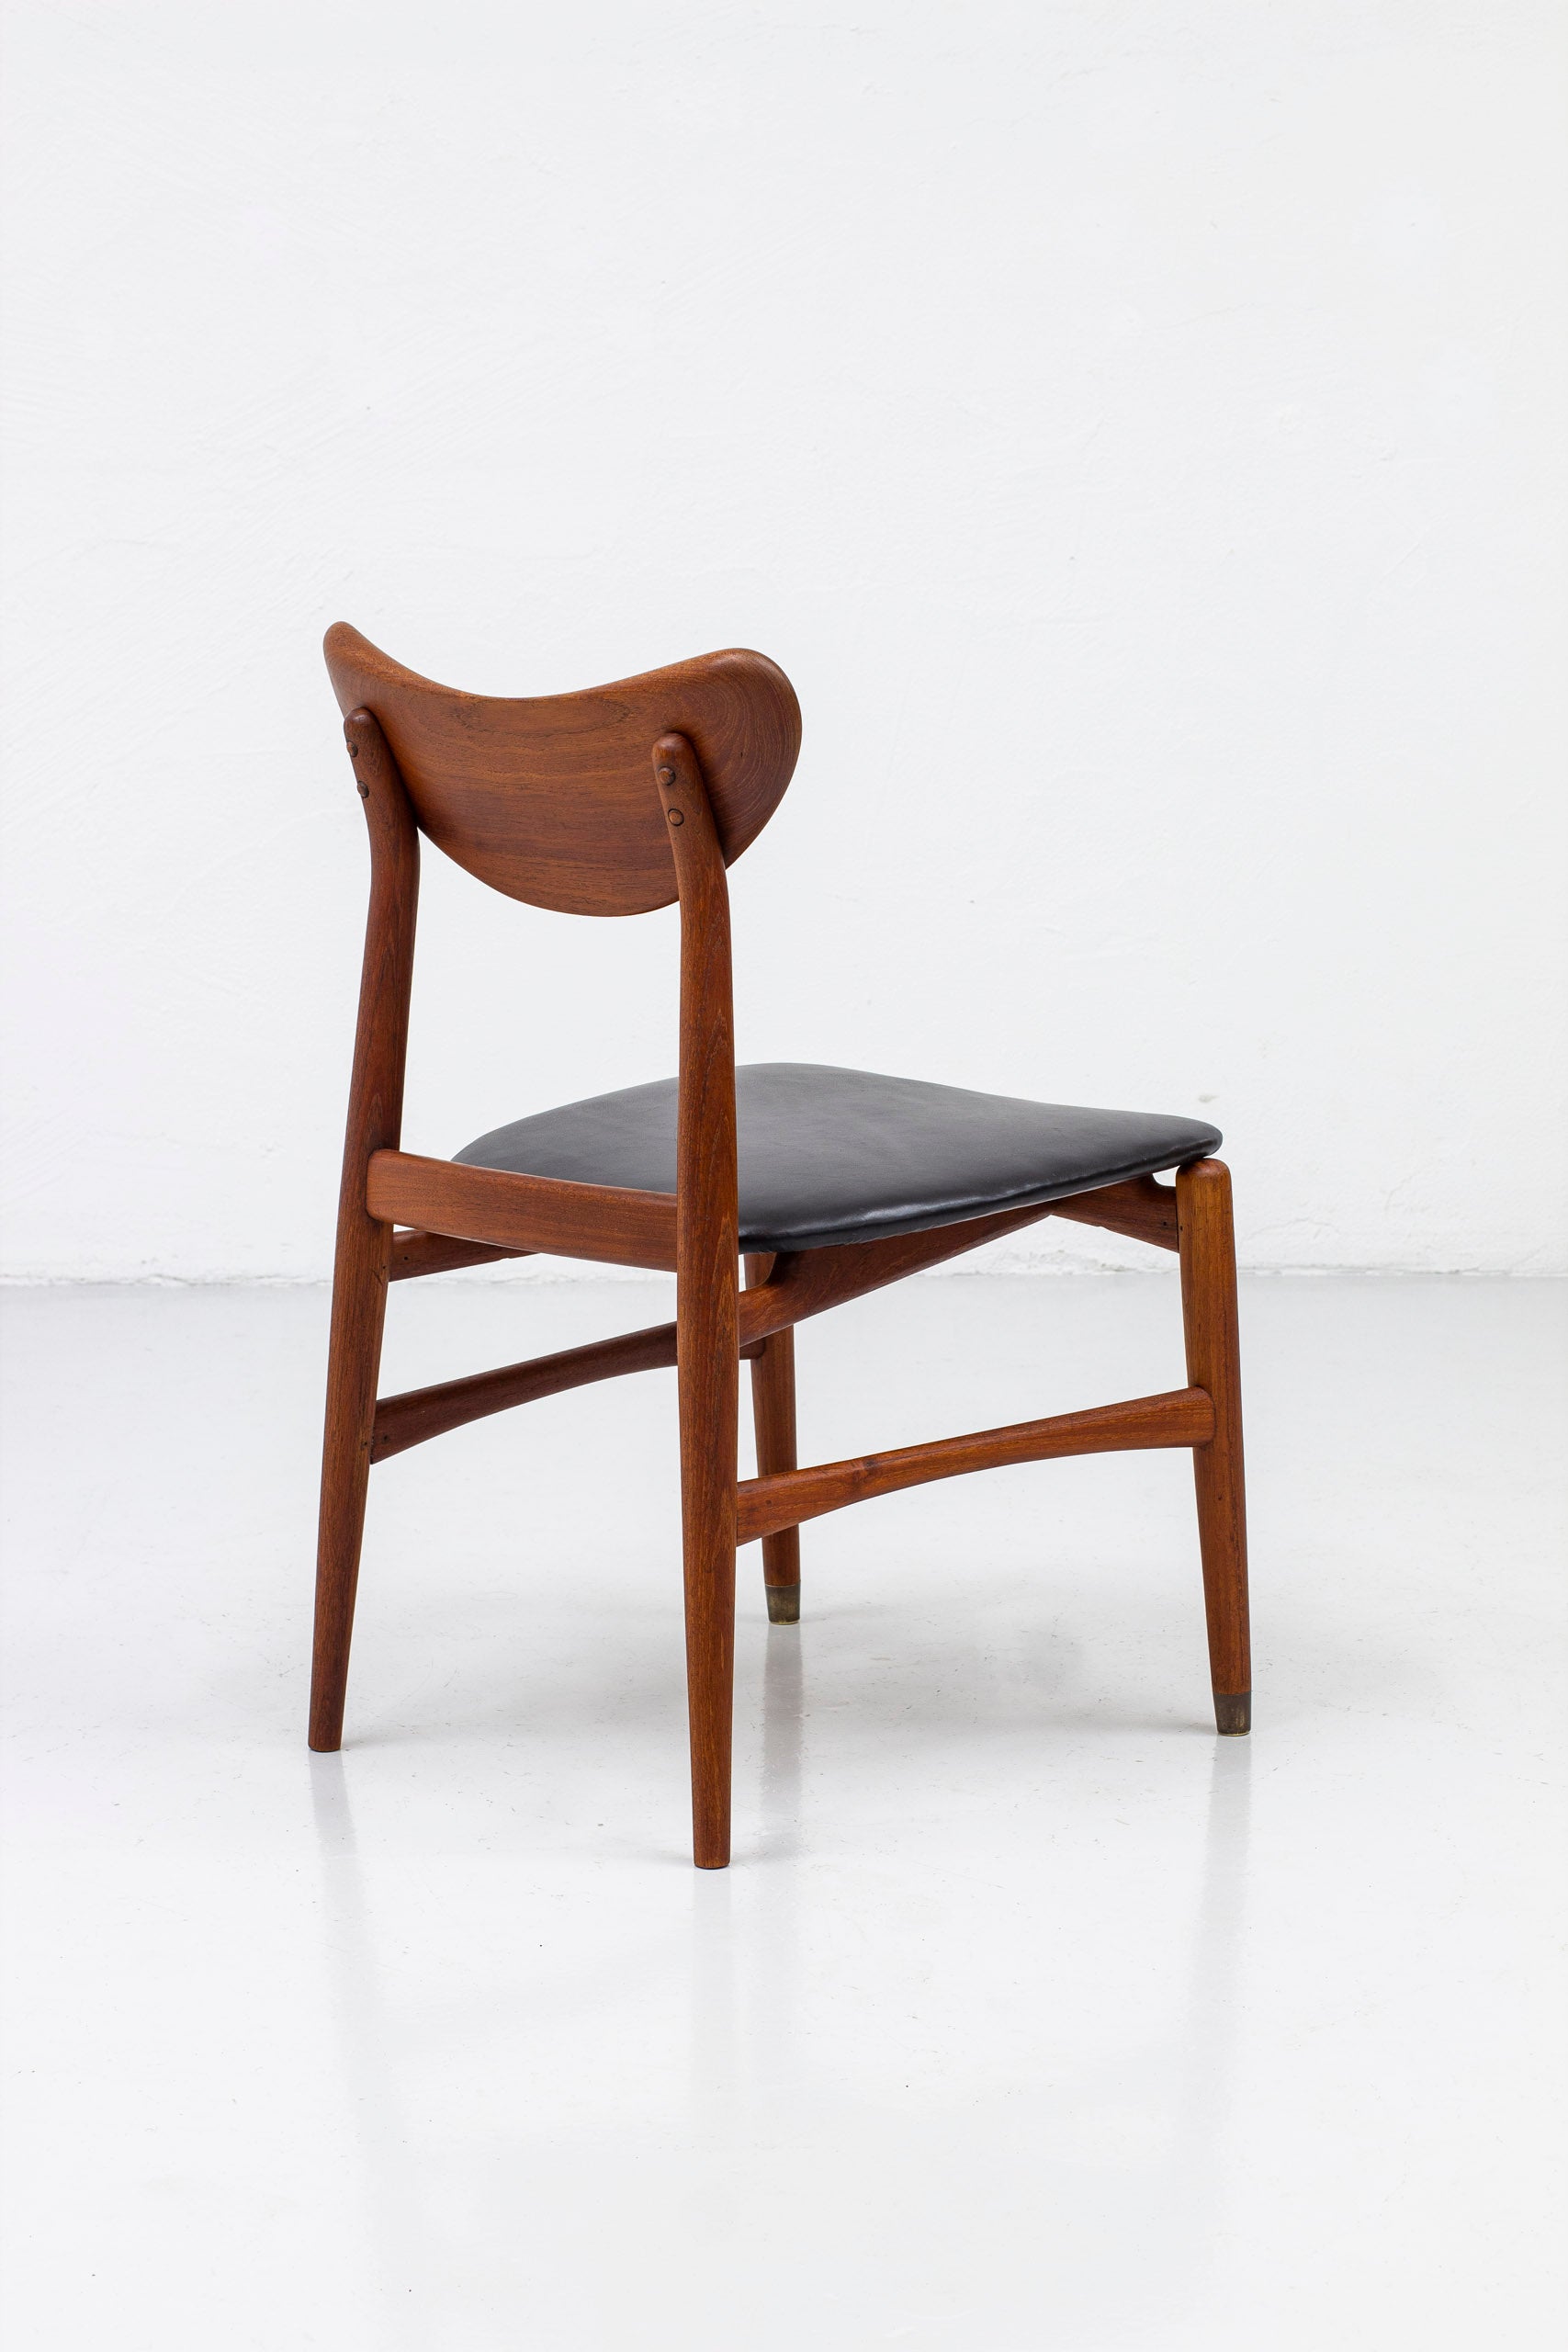 Side chair by Oluf Jensen